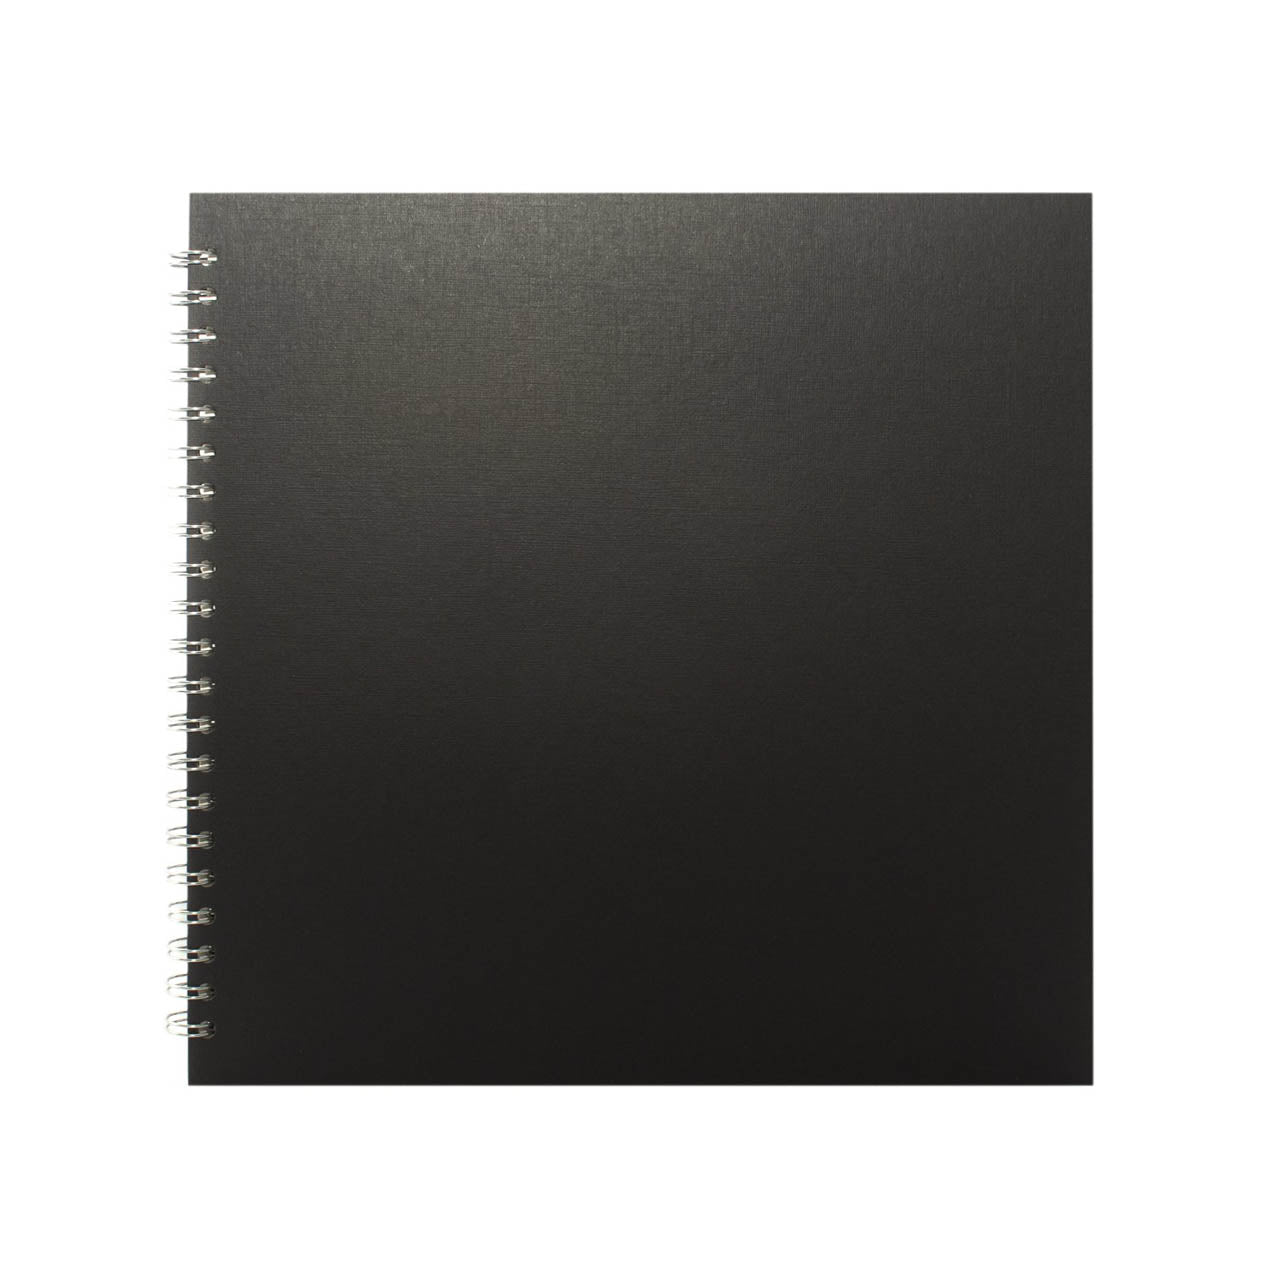 Custom 11x11 Square, Eco Black Sketchbook